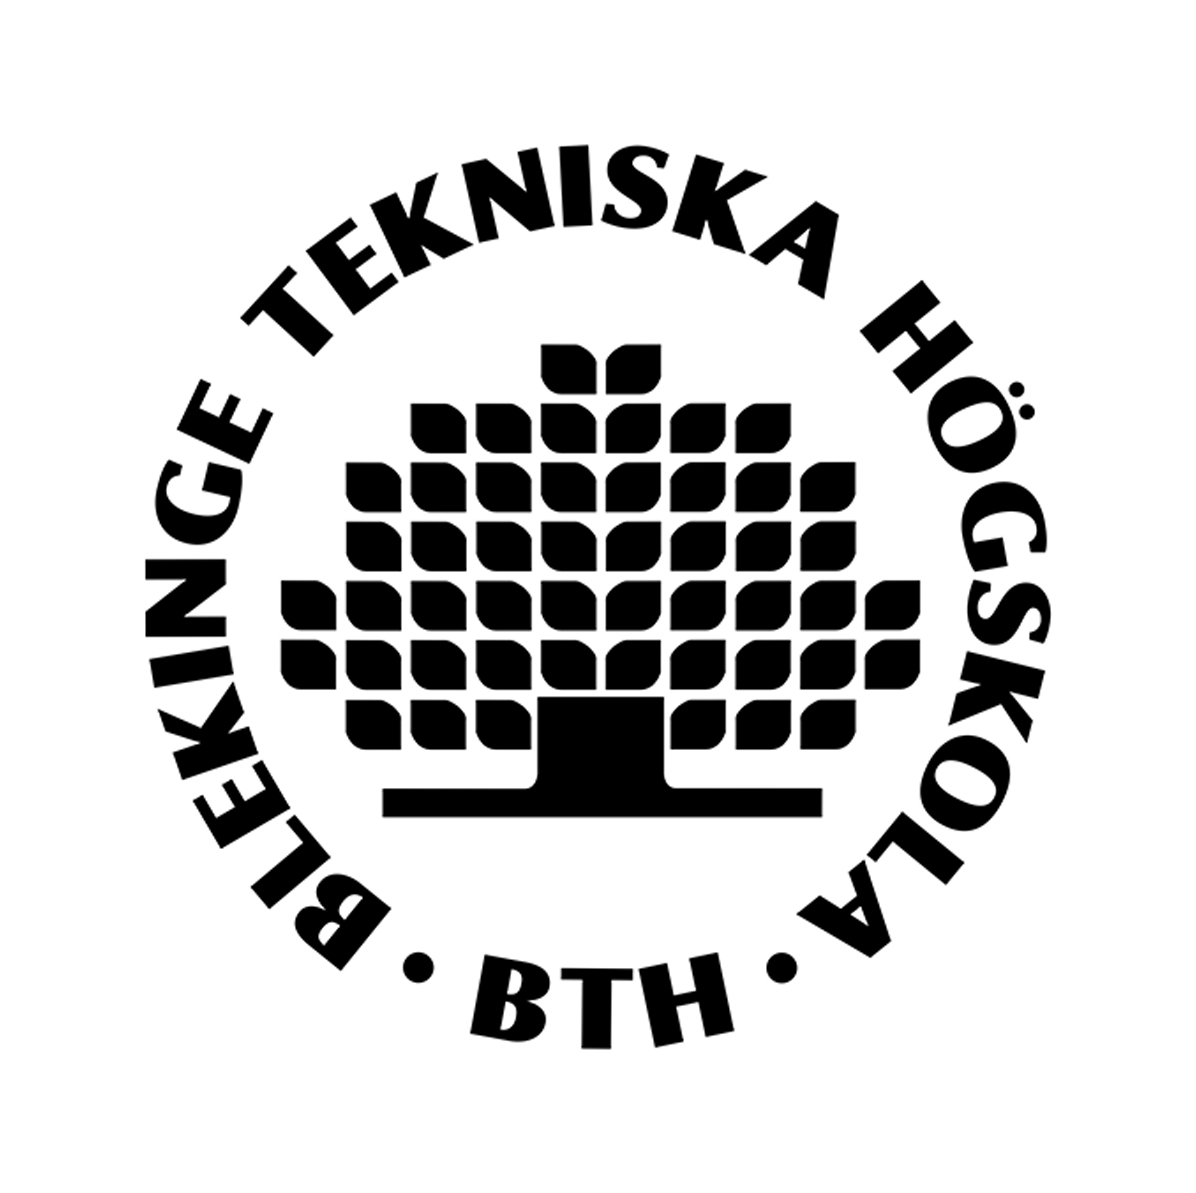 Blekinge Institute of Technology